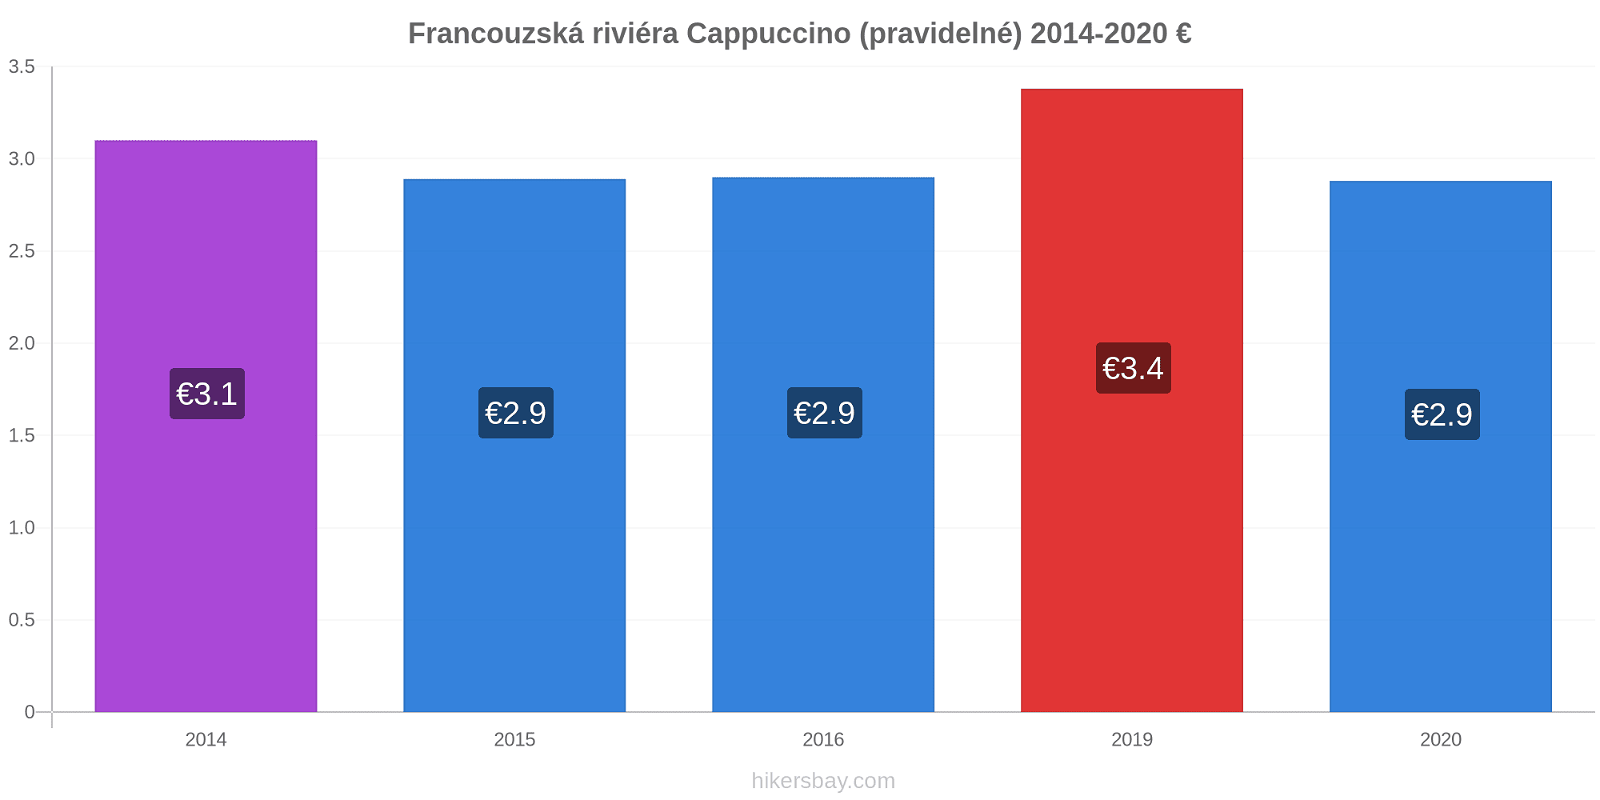 Francouzská riviéra změny cen Cappuccino (pravidelné) hikersbay.com